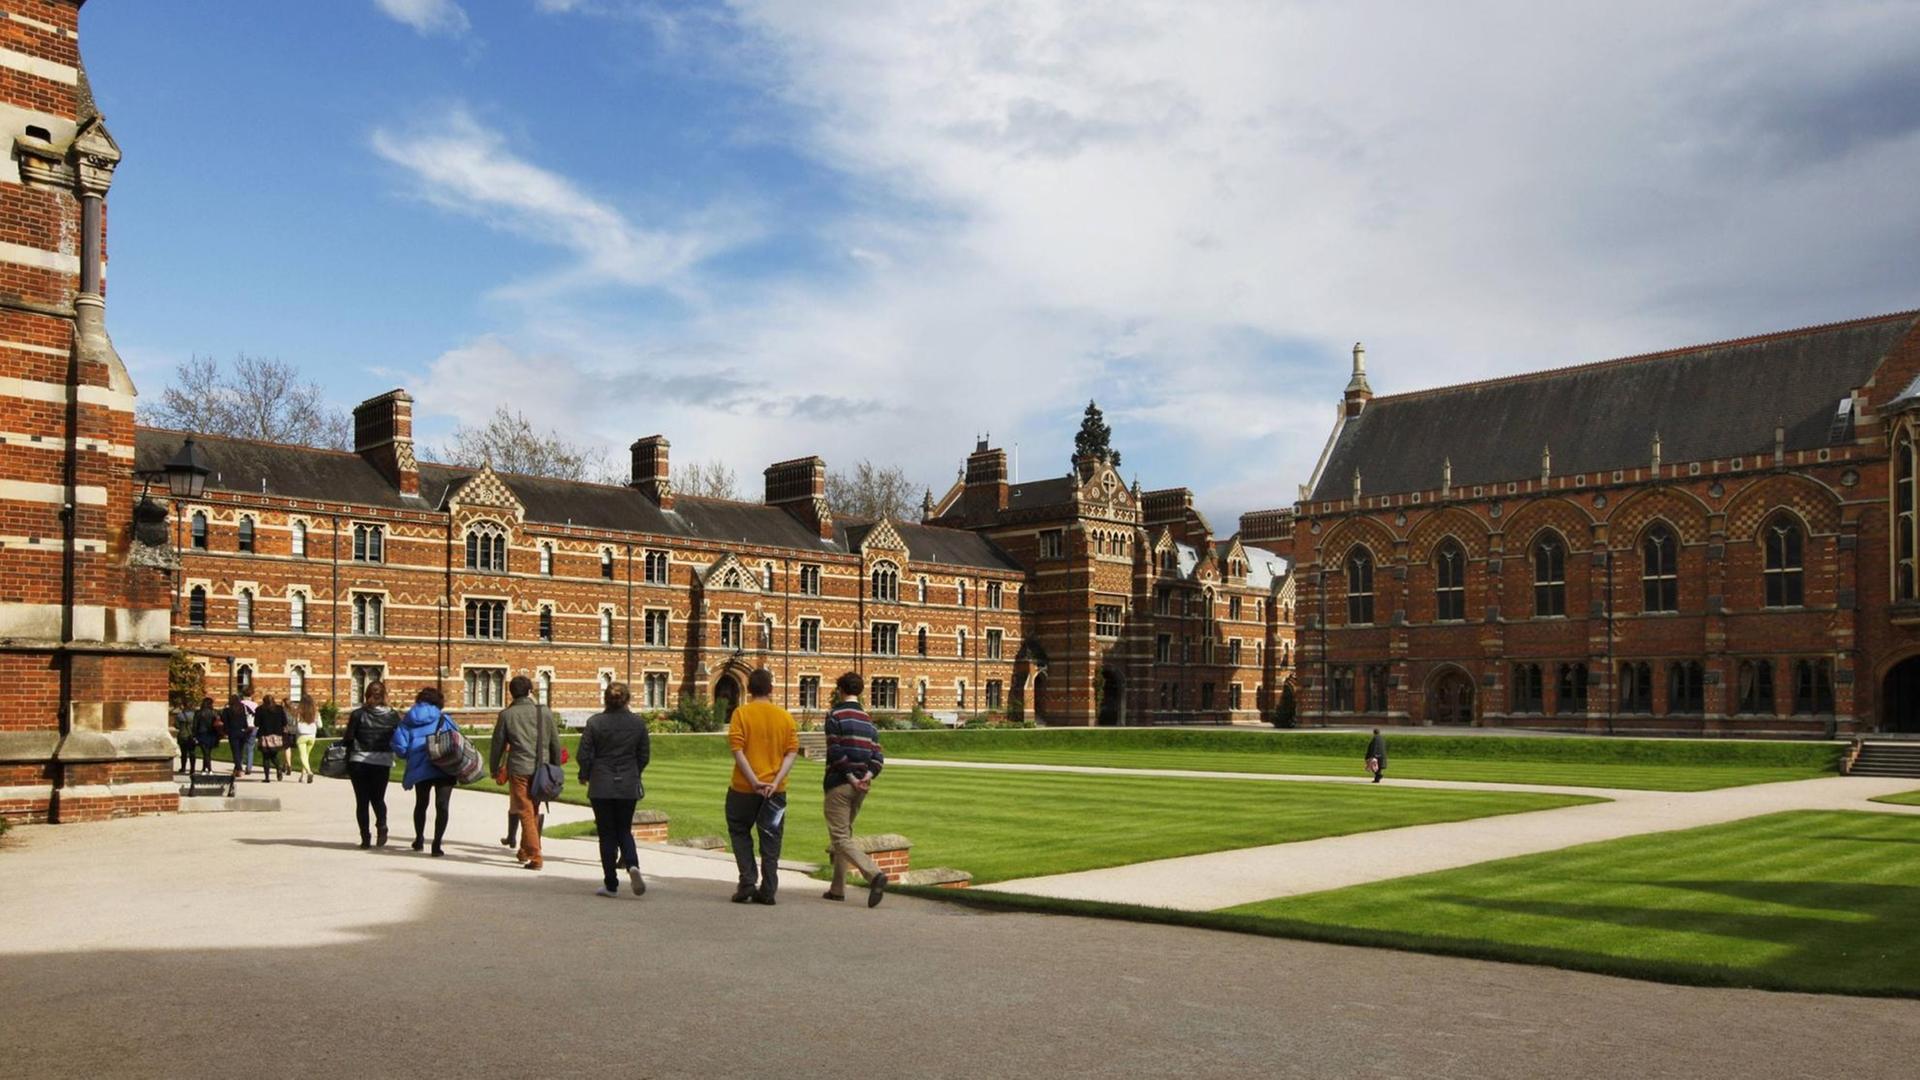 Campus des Keble College. Eines von 39 Colleges, die alle unabhängig sind und zusammen die University of Oxford bilden.